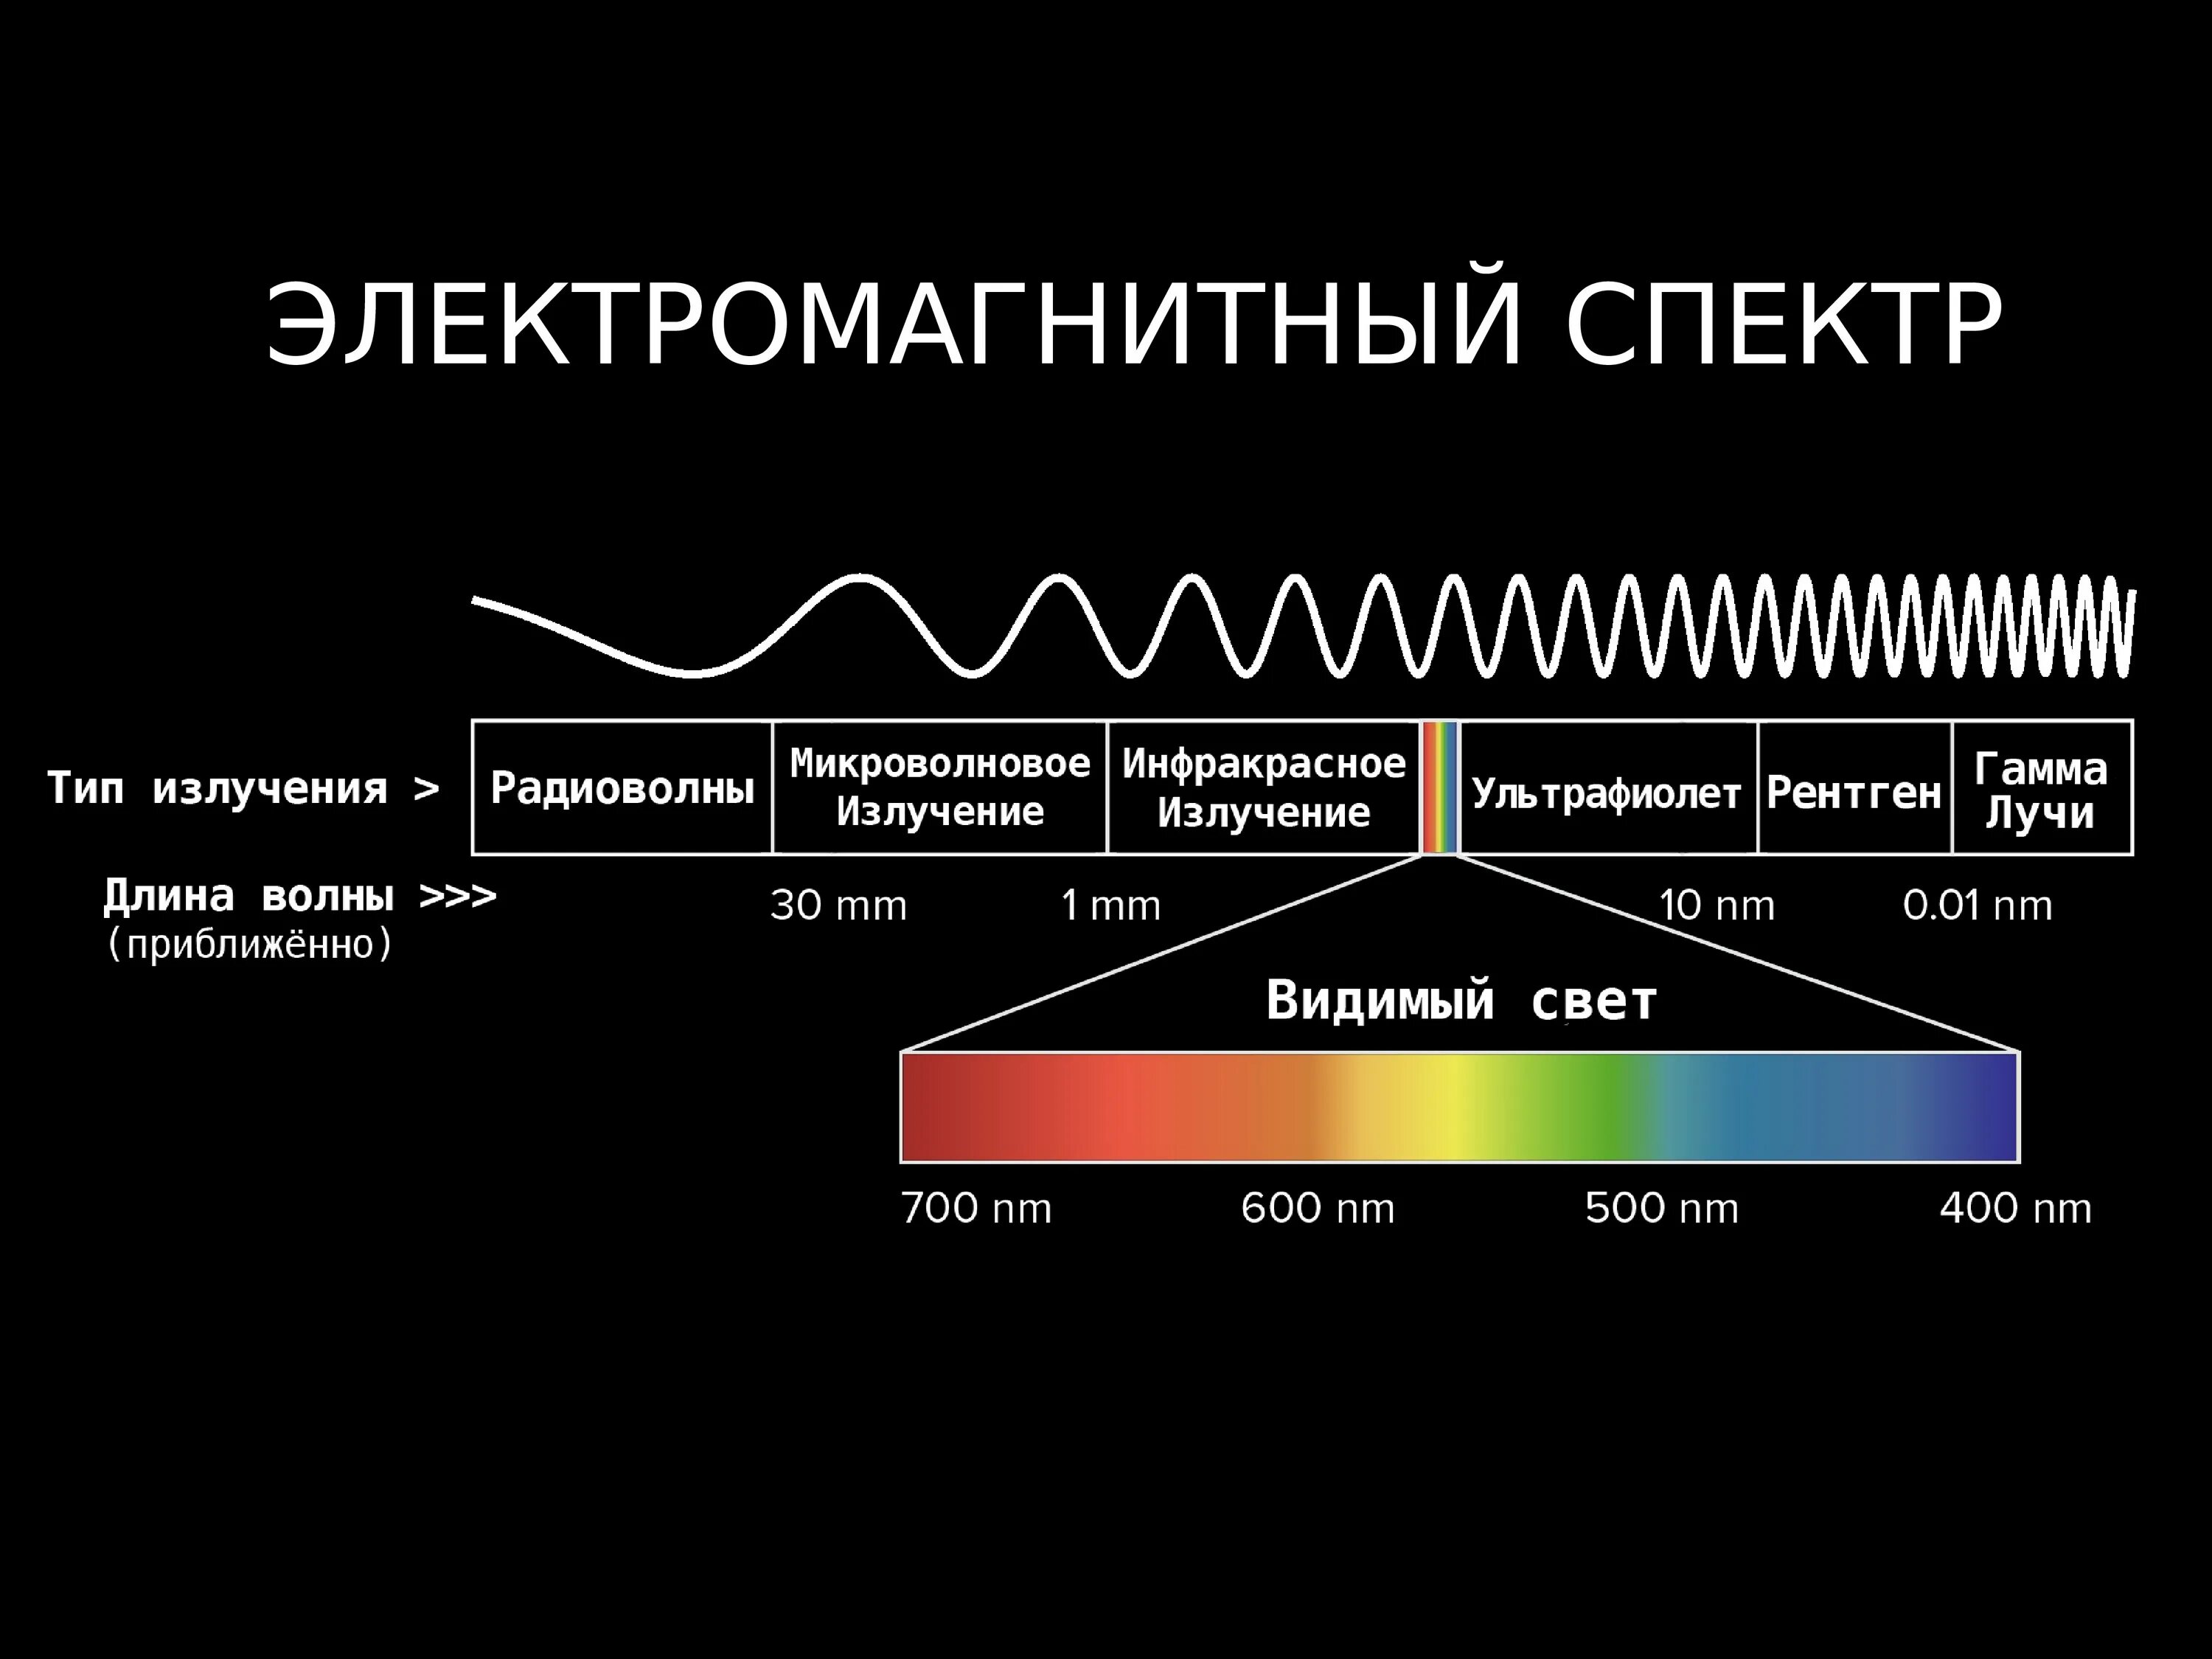 Диапазоны спектра электромагнитного излучения. Электромагнитное излучение спектр электромагнитного излучения. Спектр длин волн электромагнитных излучений. Диапазон излучения электромагнитных волн.